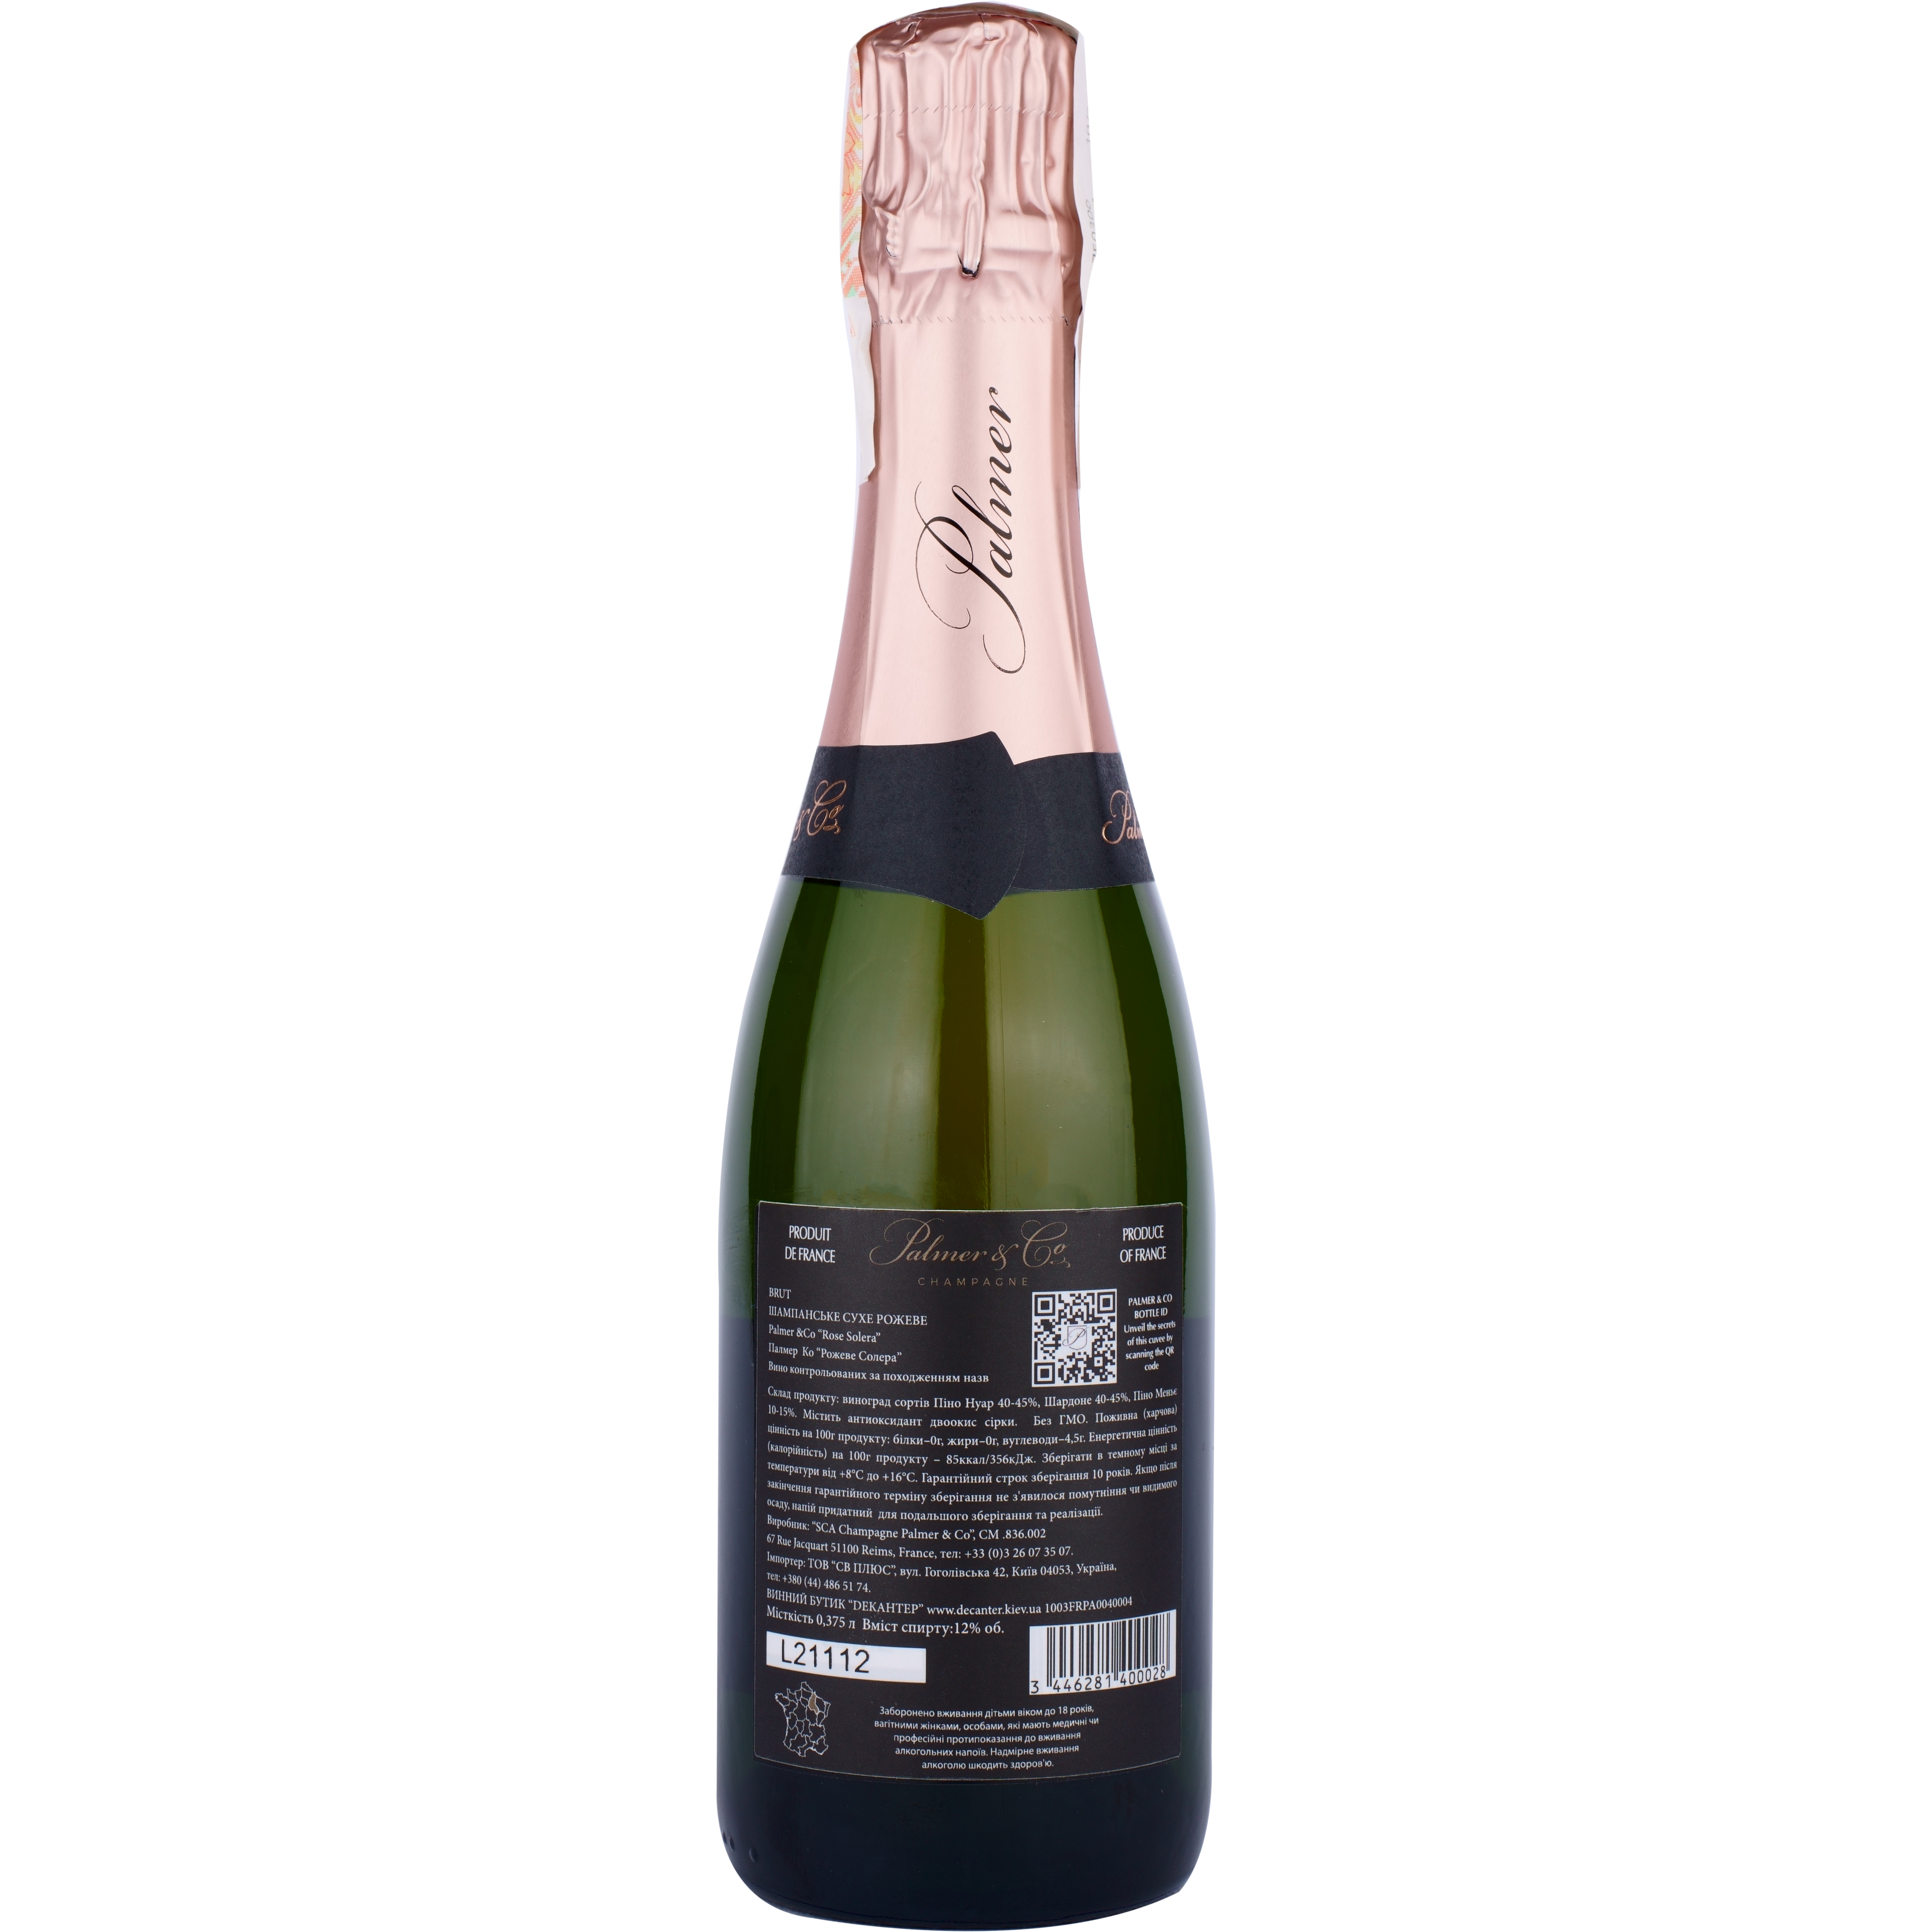 Шампанское Palmer & Co Champagne Brut Rose Solera AOC, розовое, брют, 0%, 0,375 л - фото 2